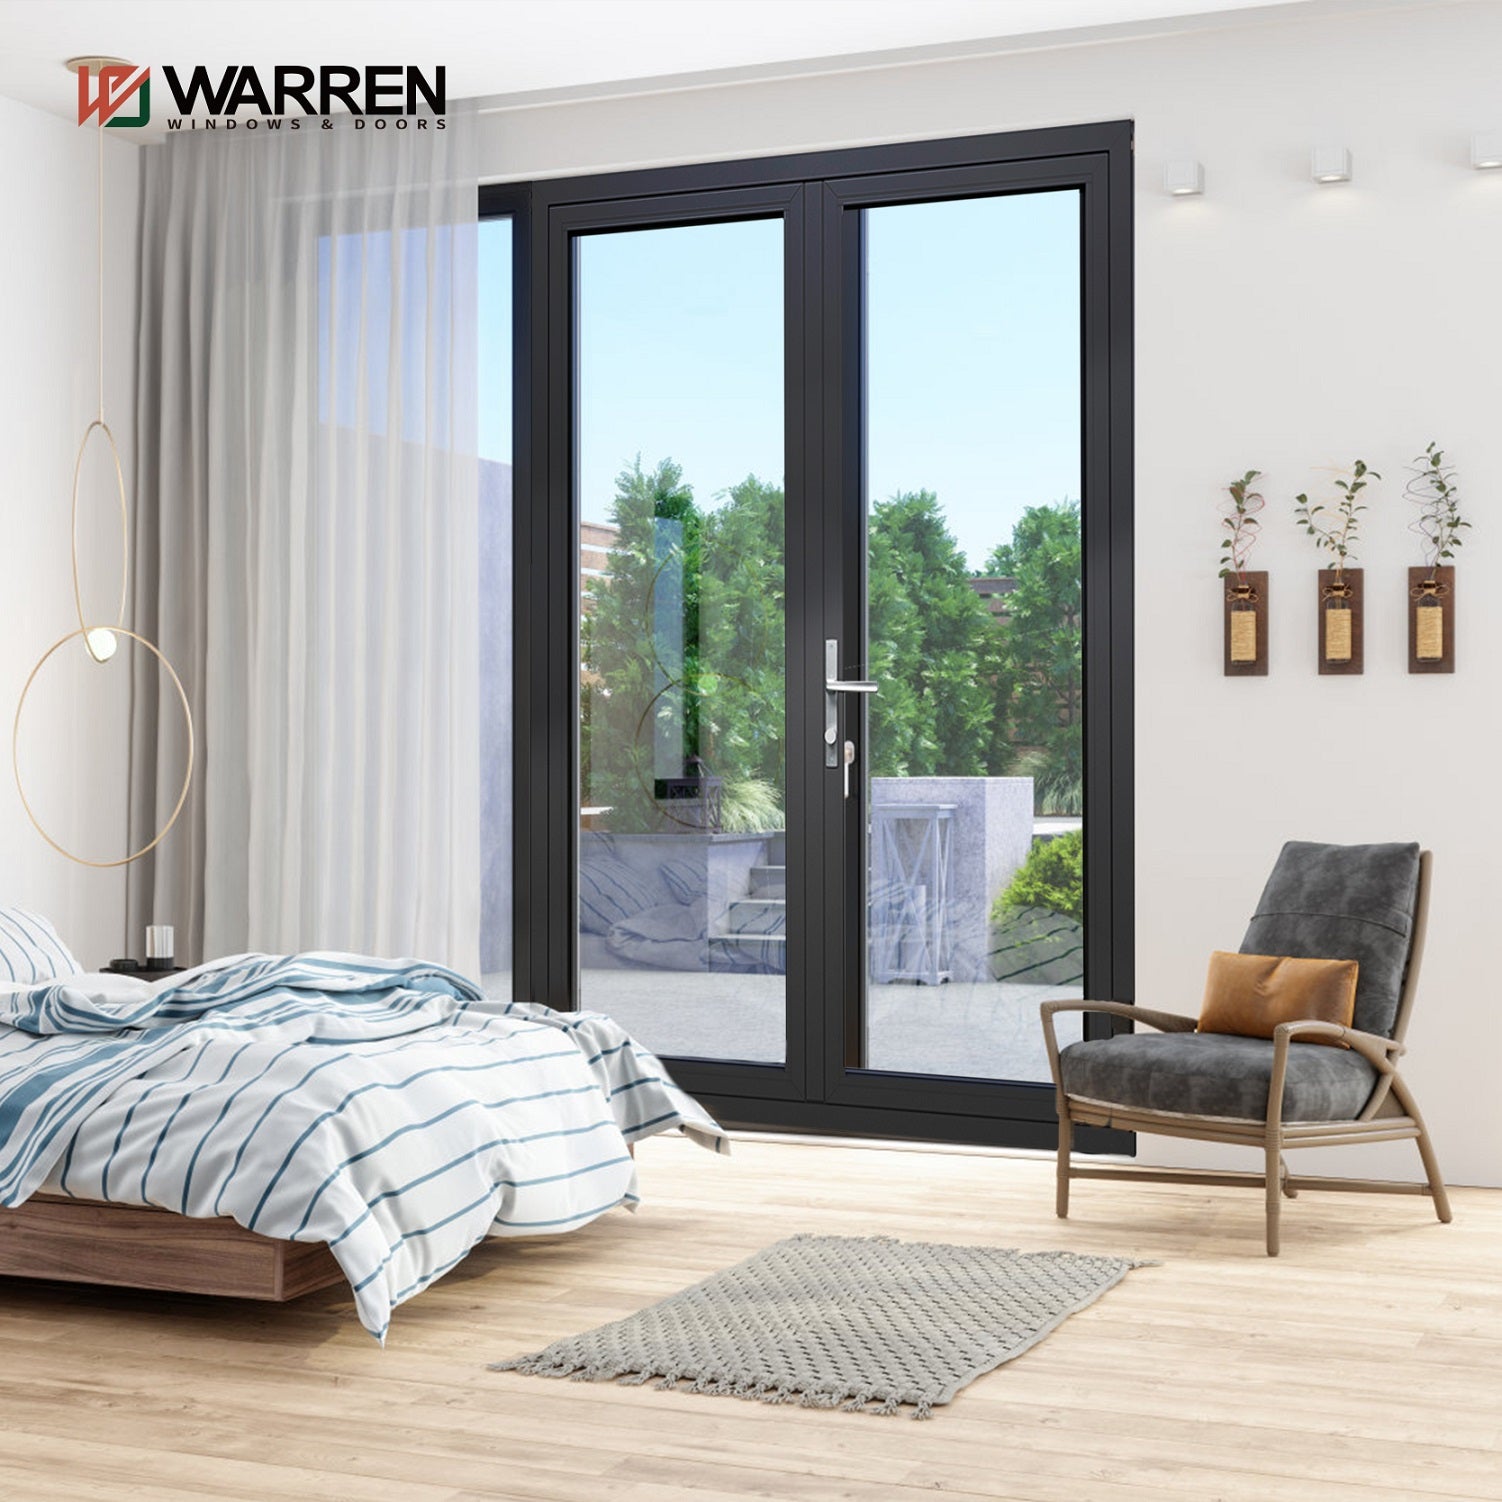 Warren New Model Double Glass Aluminium Casement Doors For House Swing Doors And  Hinged Door